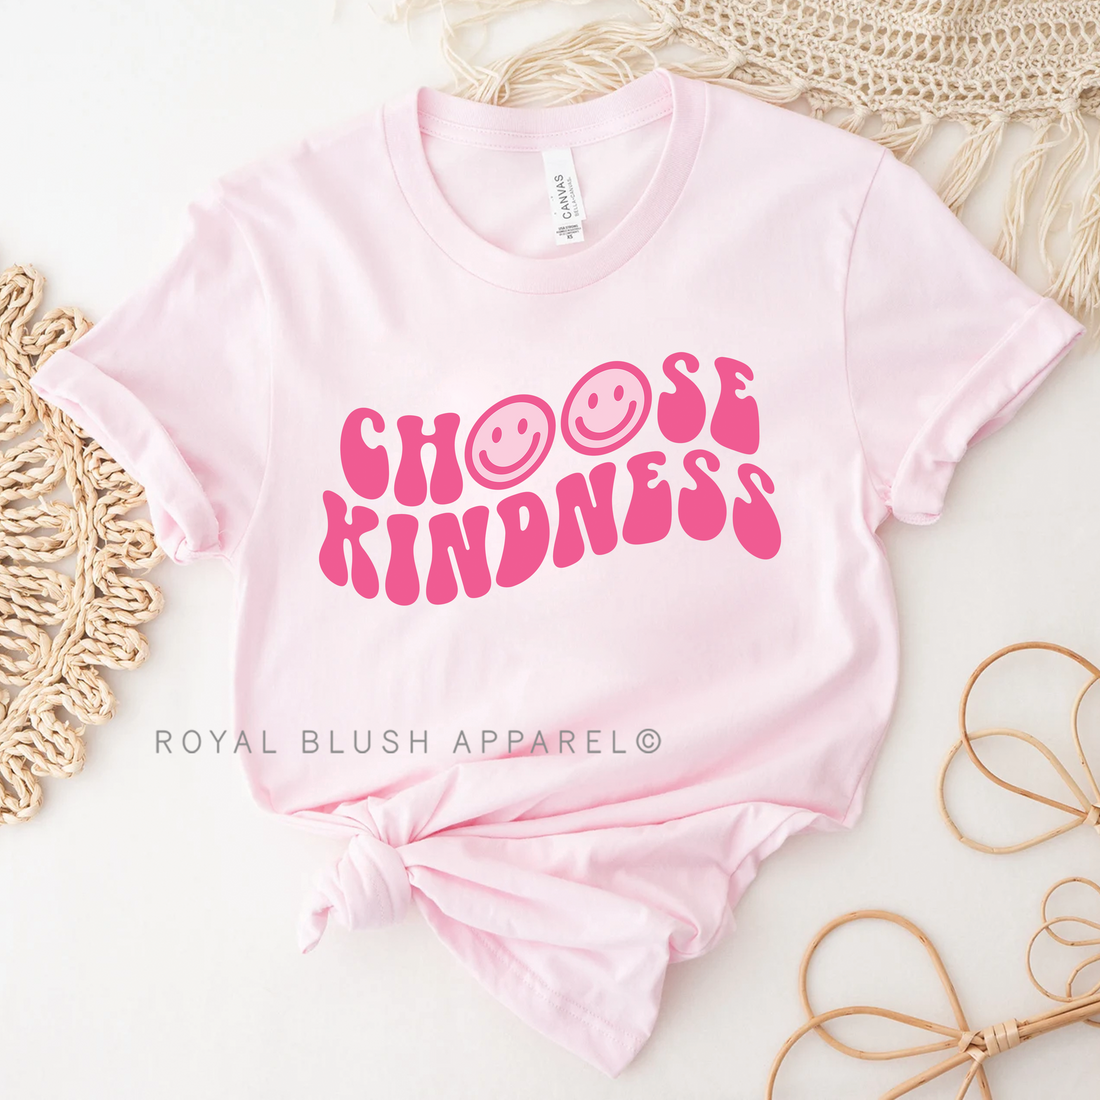 Choisissez Kindness T-shirt unisexe décontracté